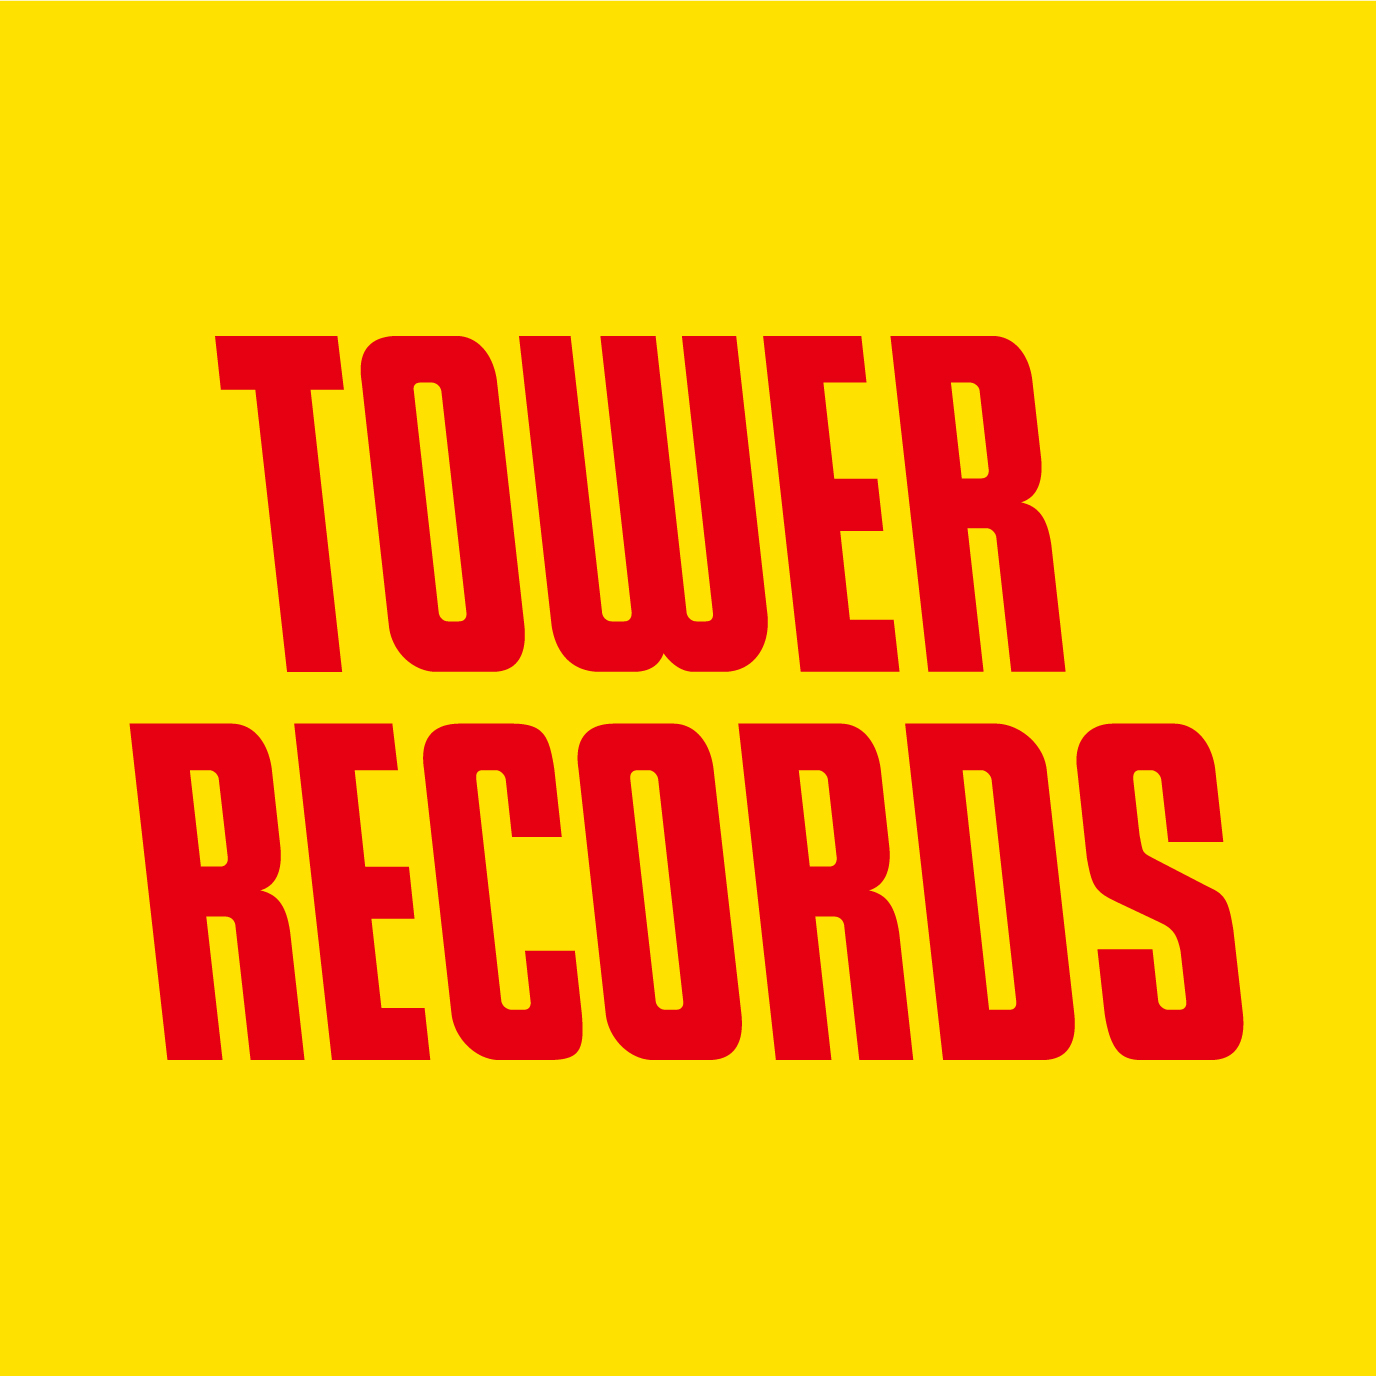 タワーレコード